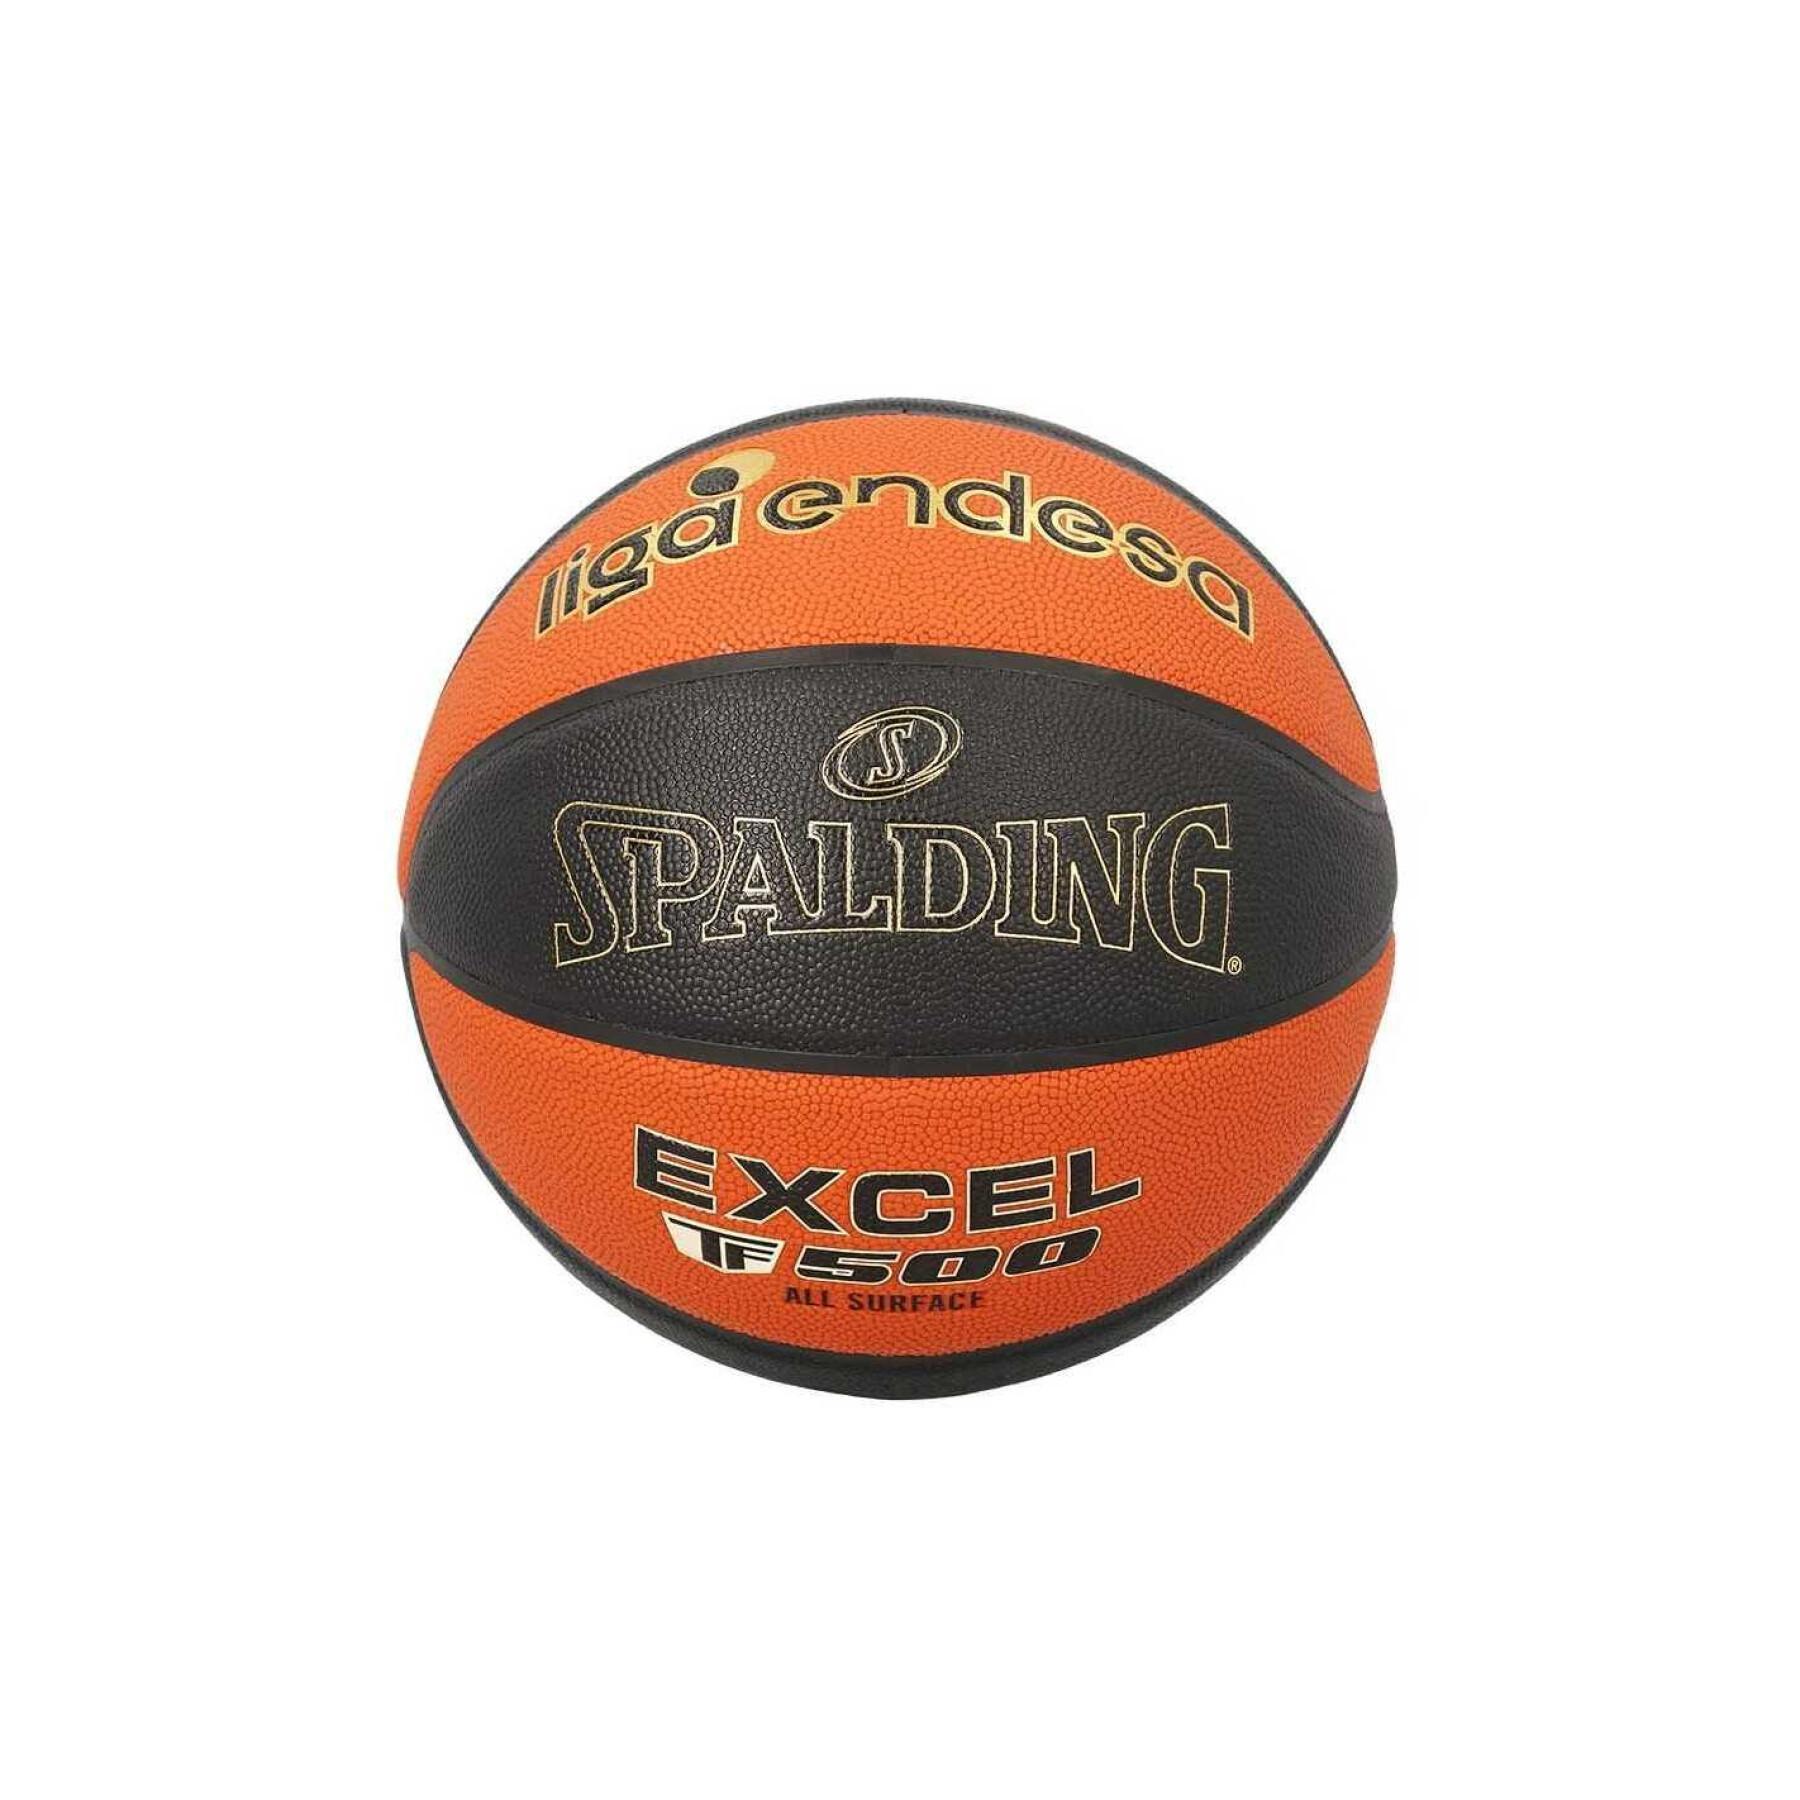 Ballon Spalding Excel TF-500 Sz7 Composite ACB